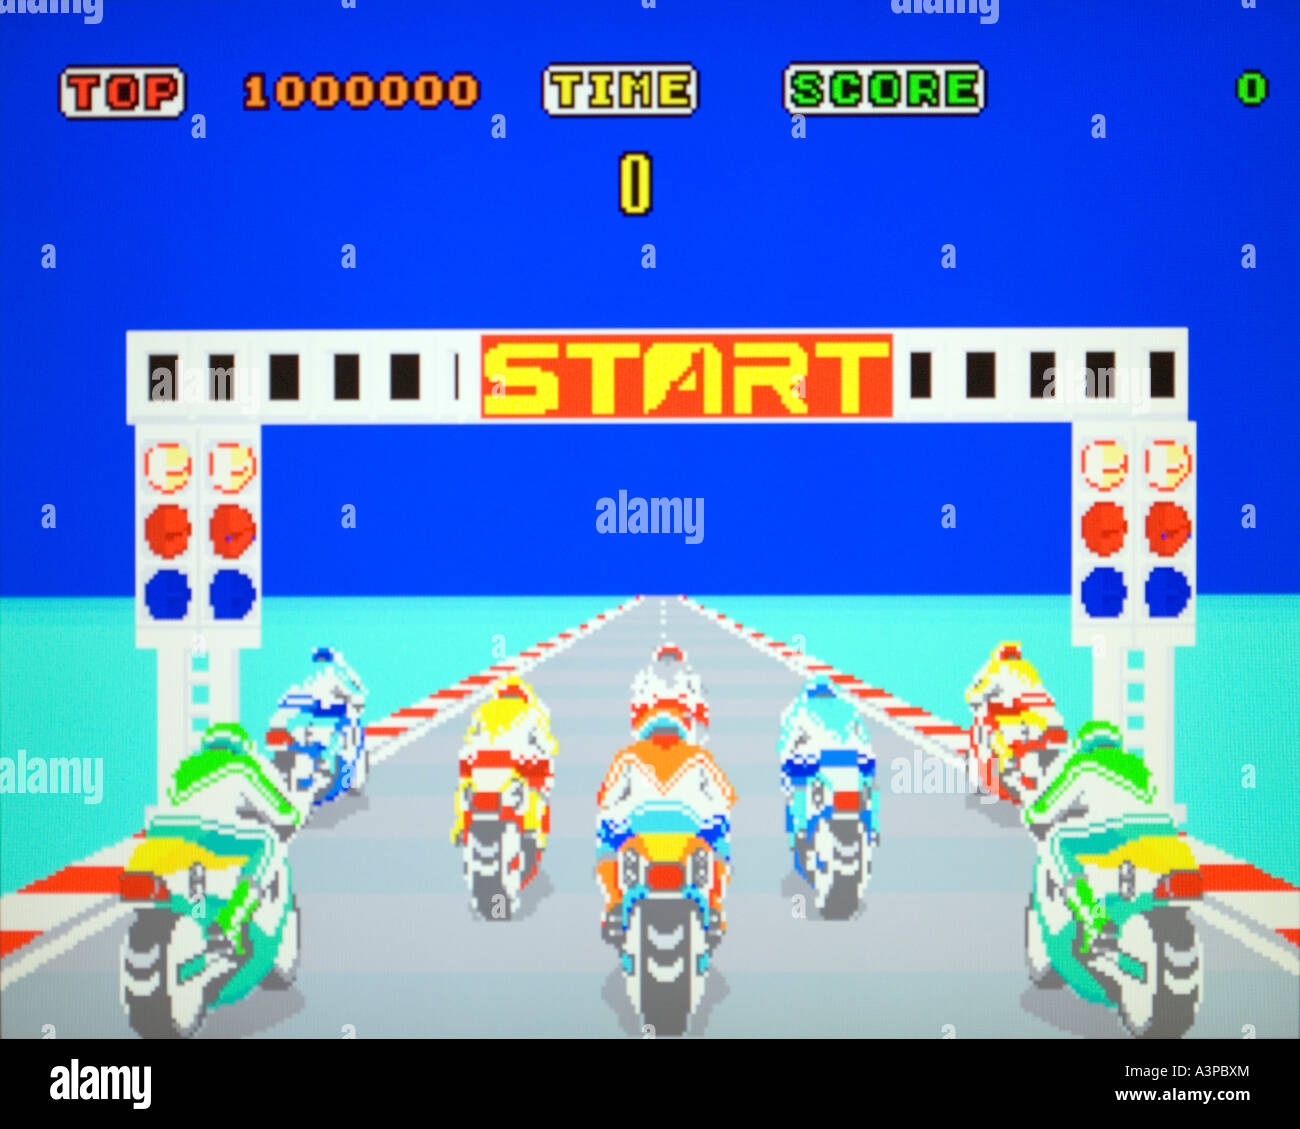 Hängen auf Sega 1985 Vintage Arcade Videospiel Screenshot nur zur redaktionellen Nutzung Stockfoto